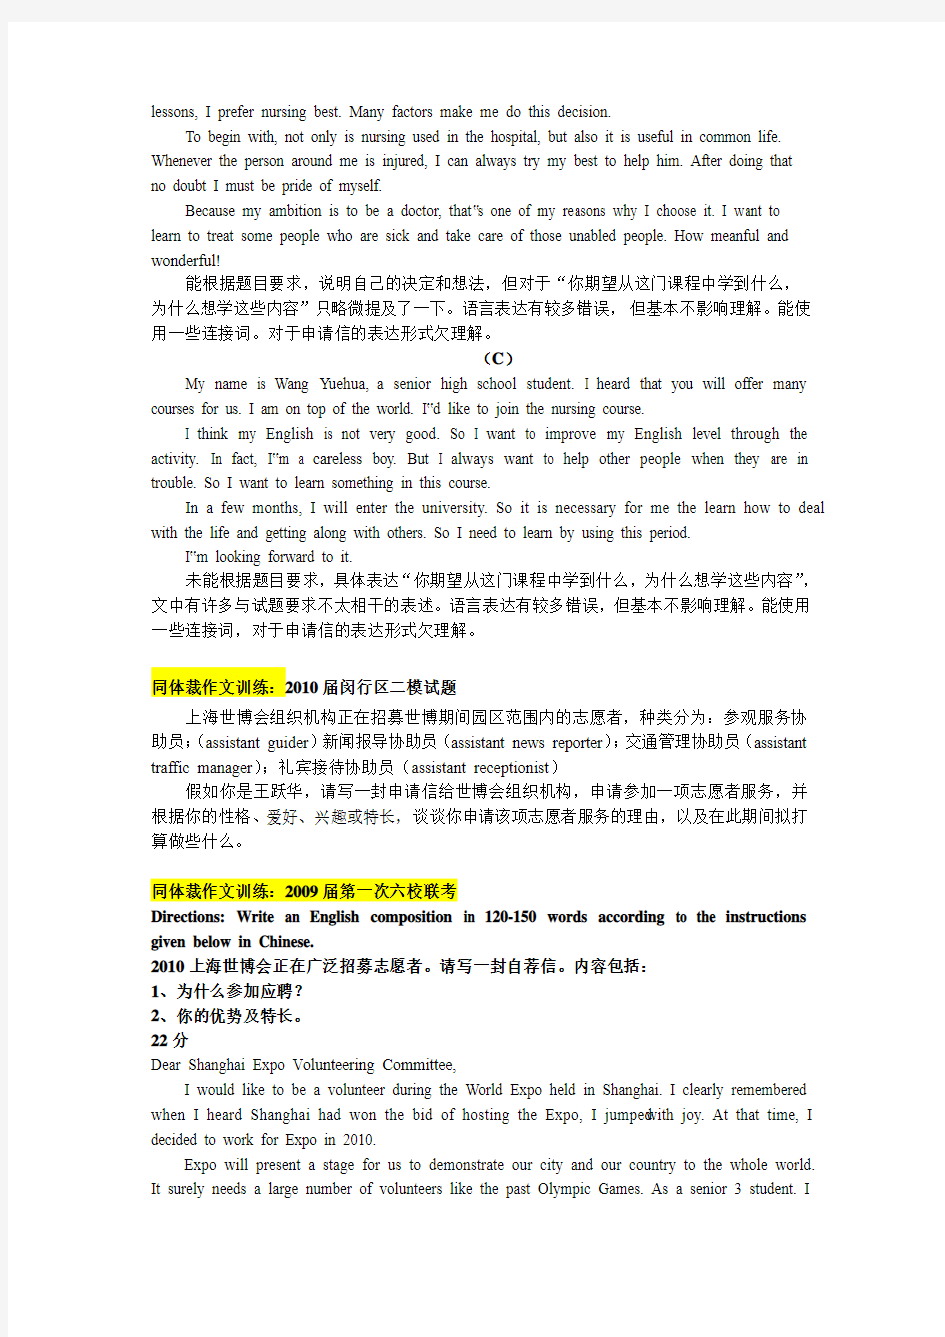 上海2009年高考英语作文训练与仿写